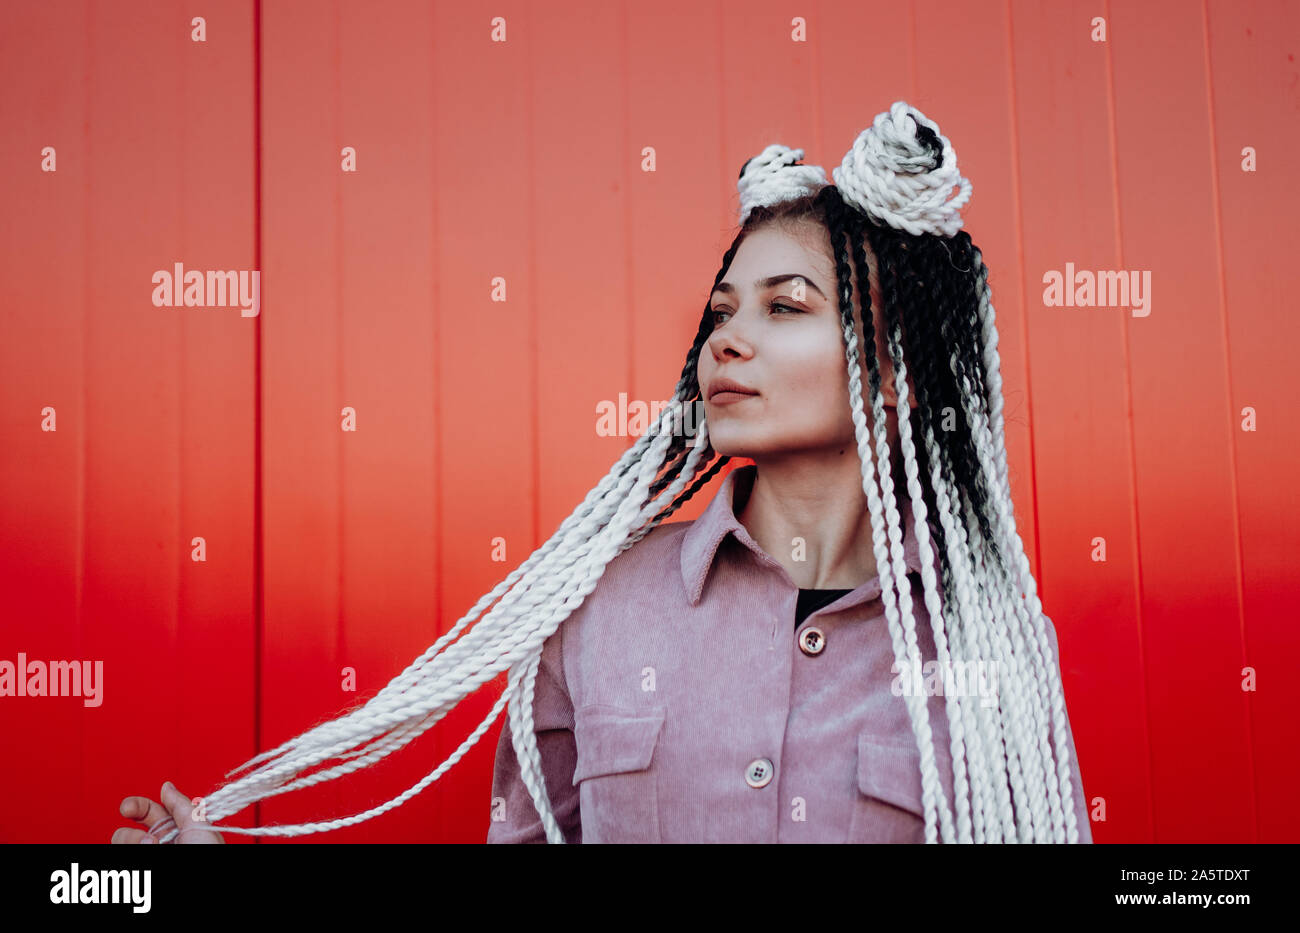 Portrait de fille cool magnifique avec des tresses et dreadlocks sur red wall Banque D'Images